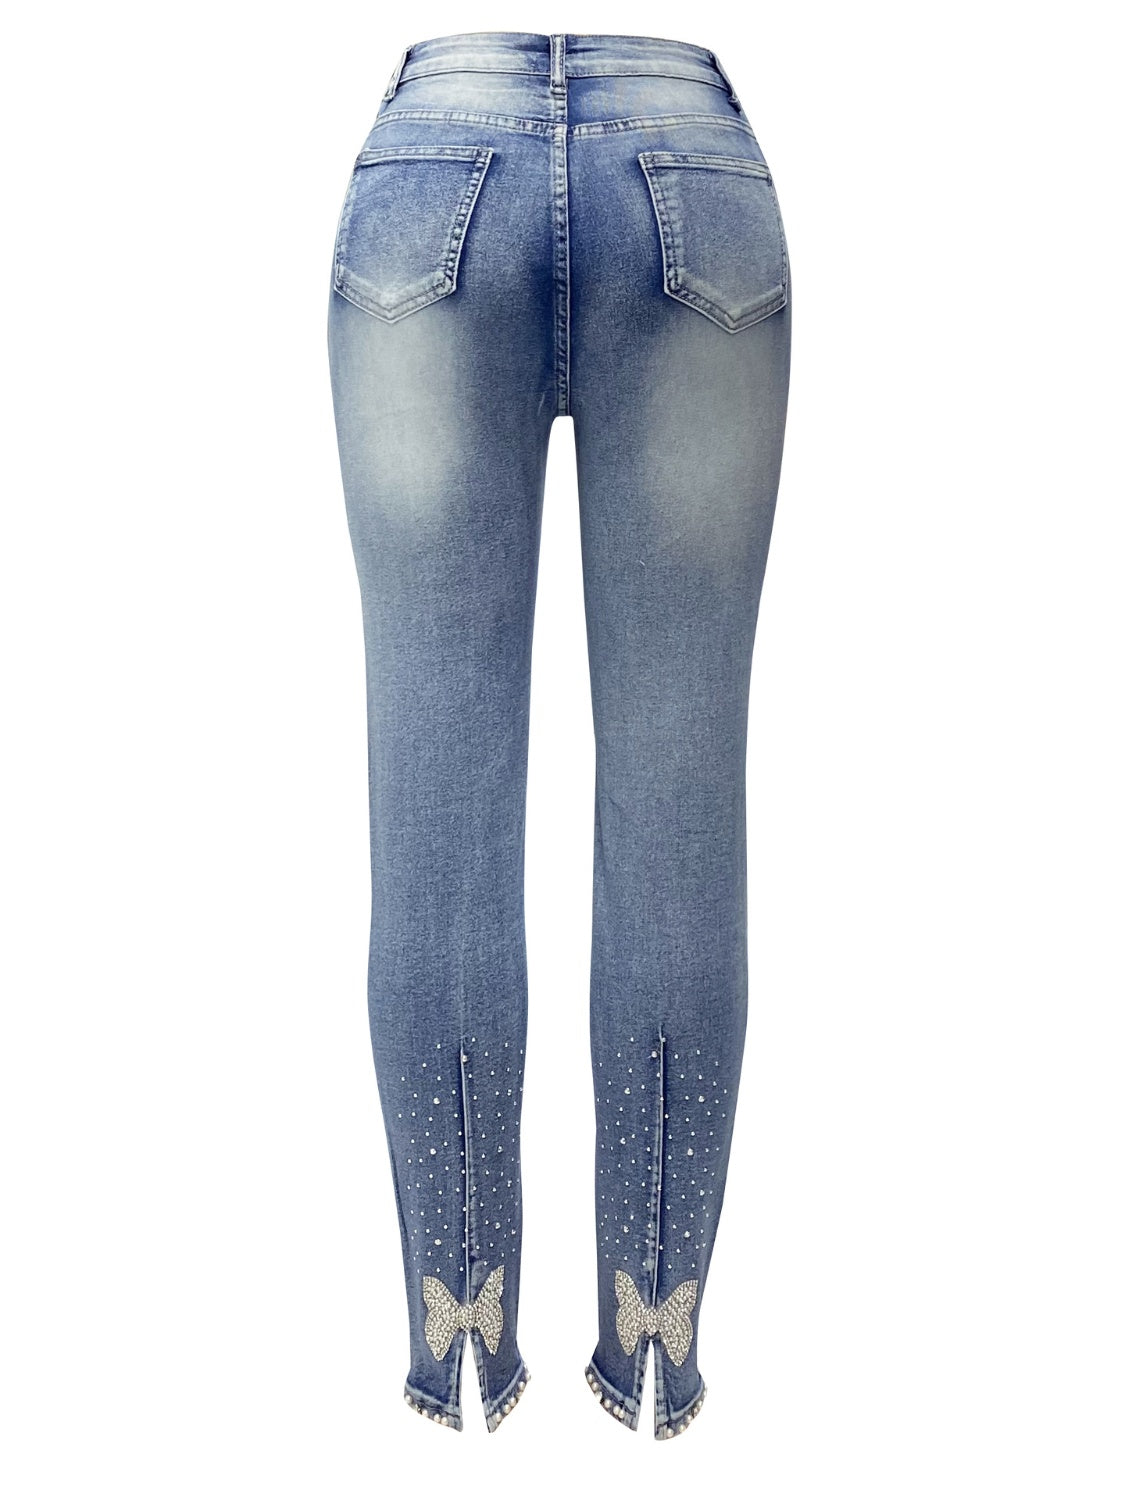 Rhinestone Skinny Women Jeans with Pockets